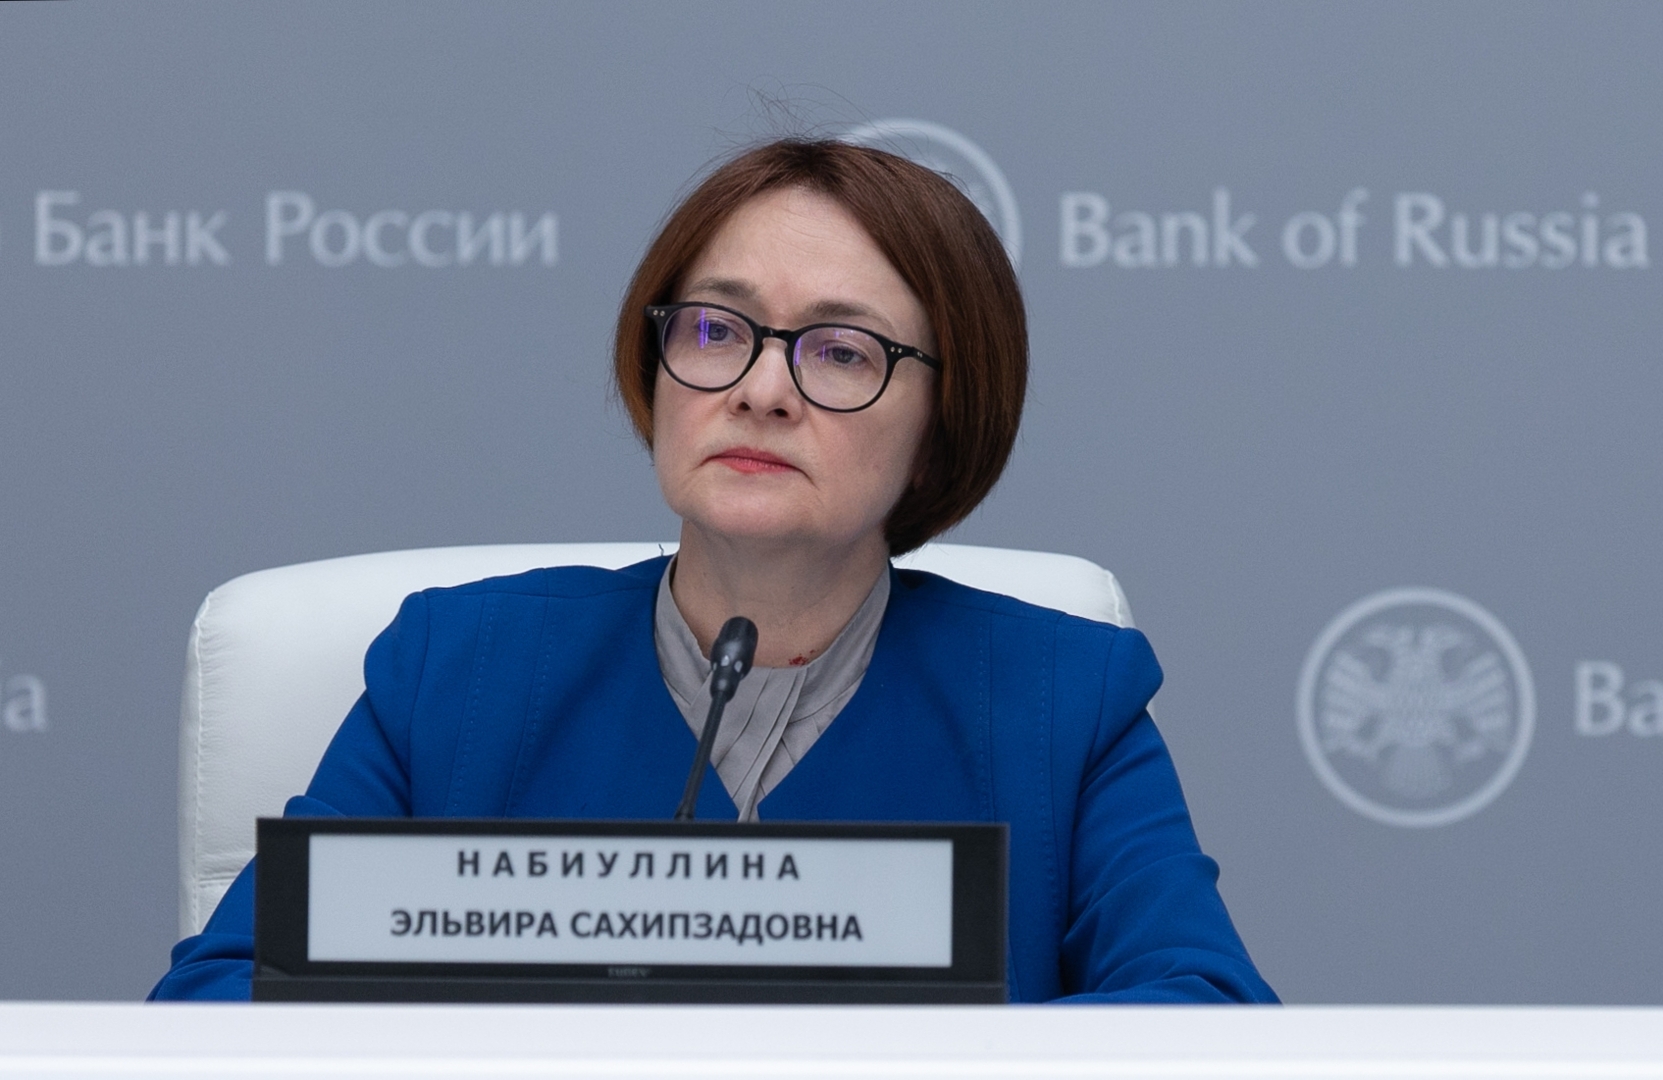 صورة من الأرشيف - رئيسة البنك المركزي الروسي إلفيرا نابيولينا